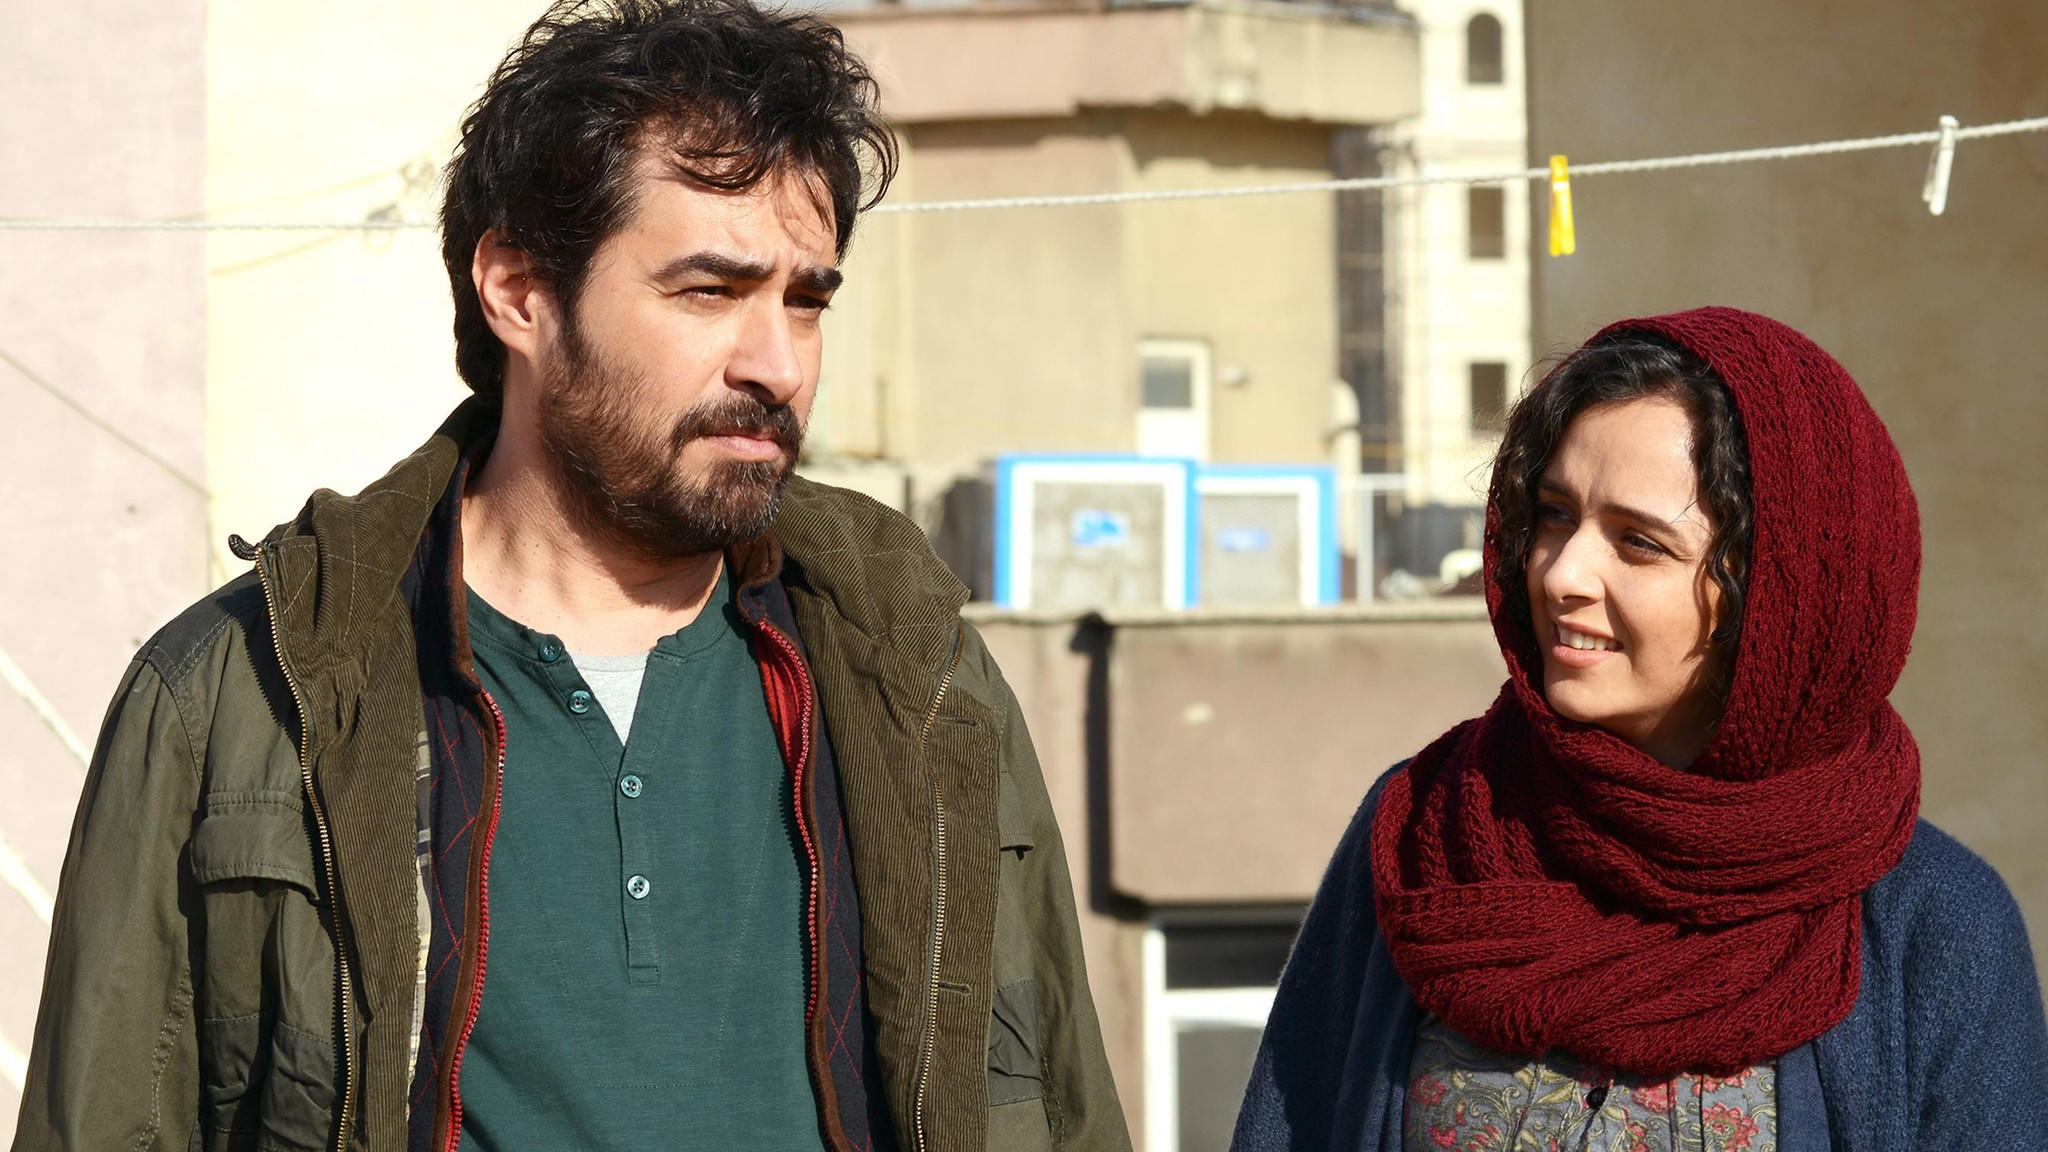 Shahab Hosseini and Taraneh Alidoosti in "The Salesman." (Habib Majidi / SMPSP)